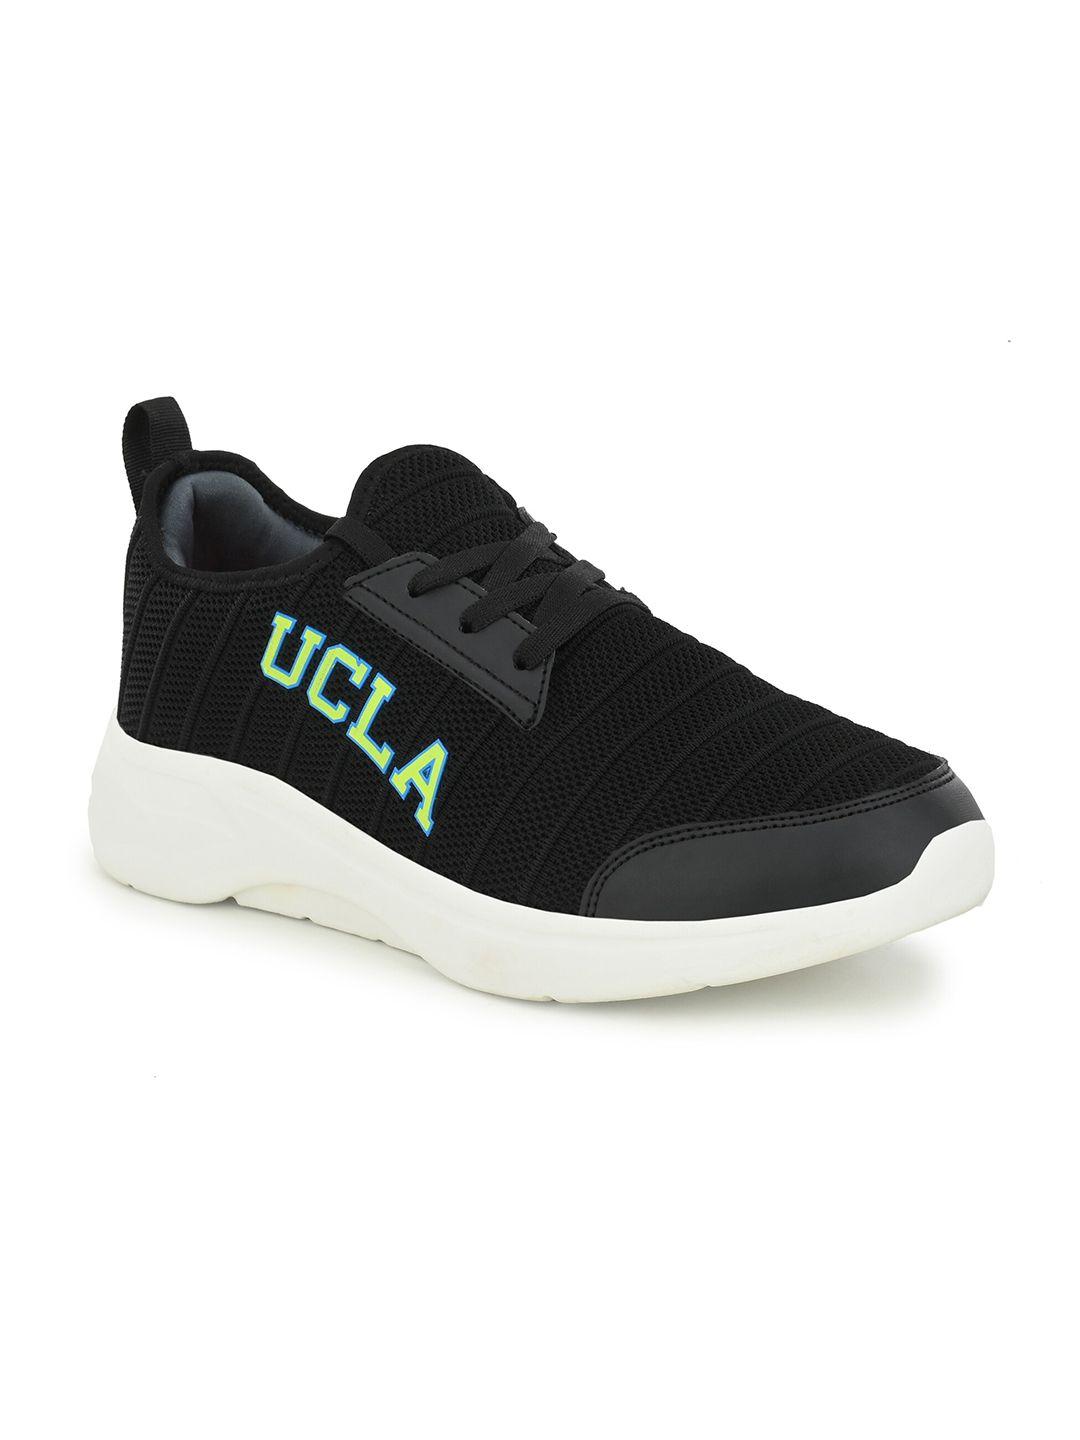 UCLA Men Black & White Running Non-Marking Shoes